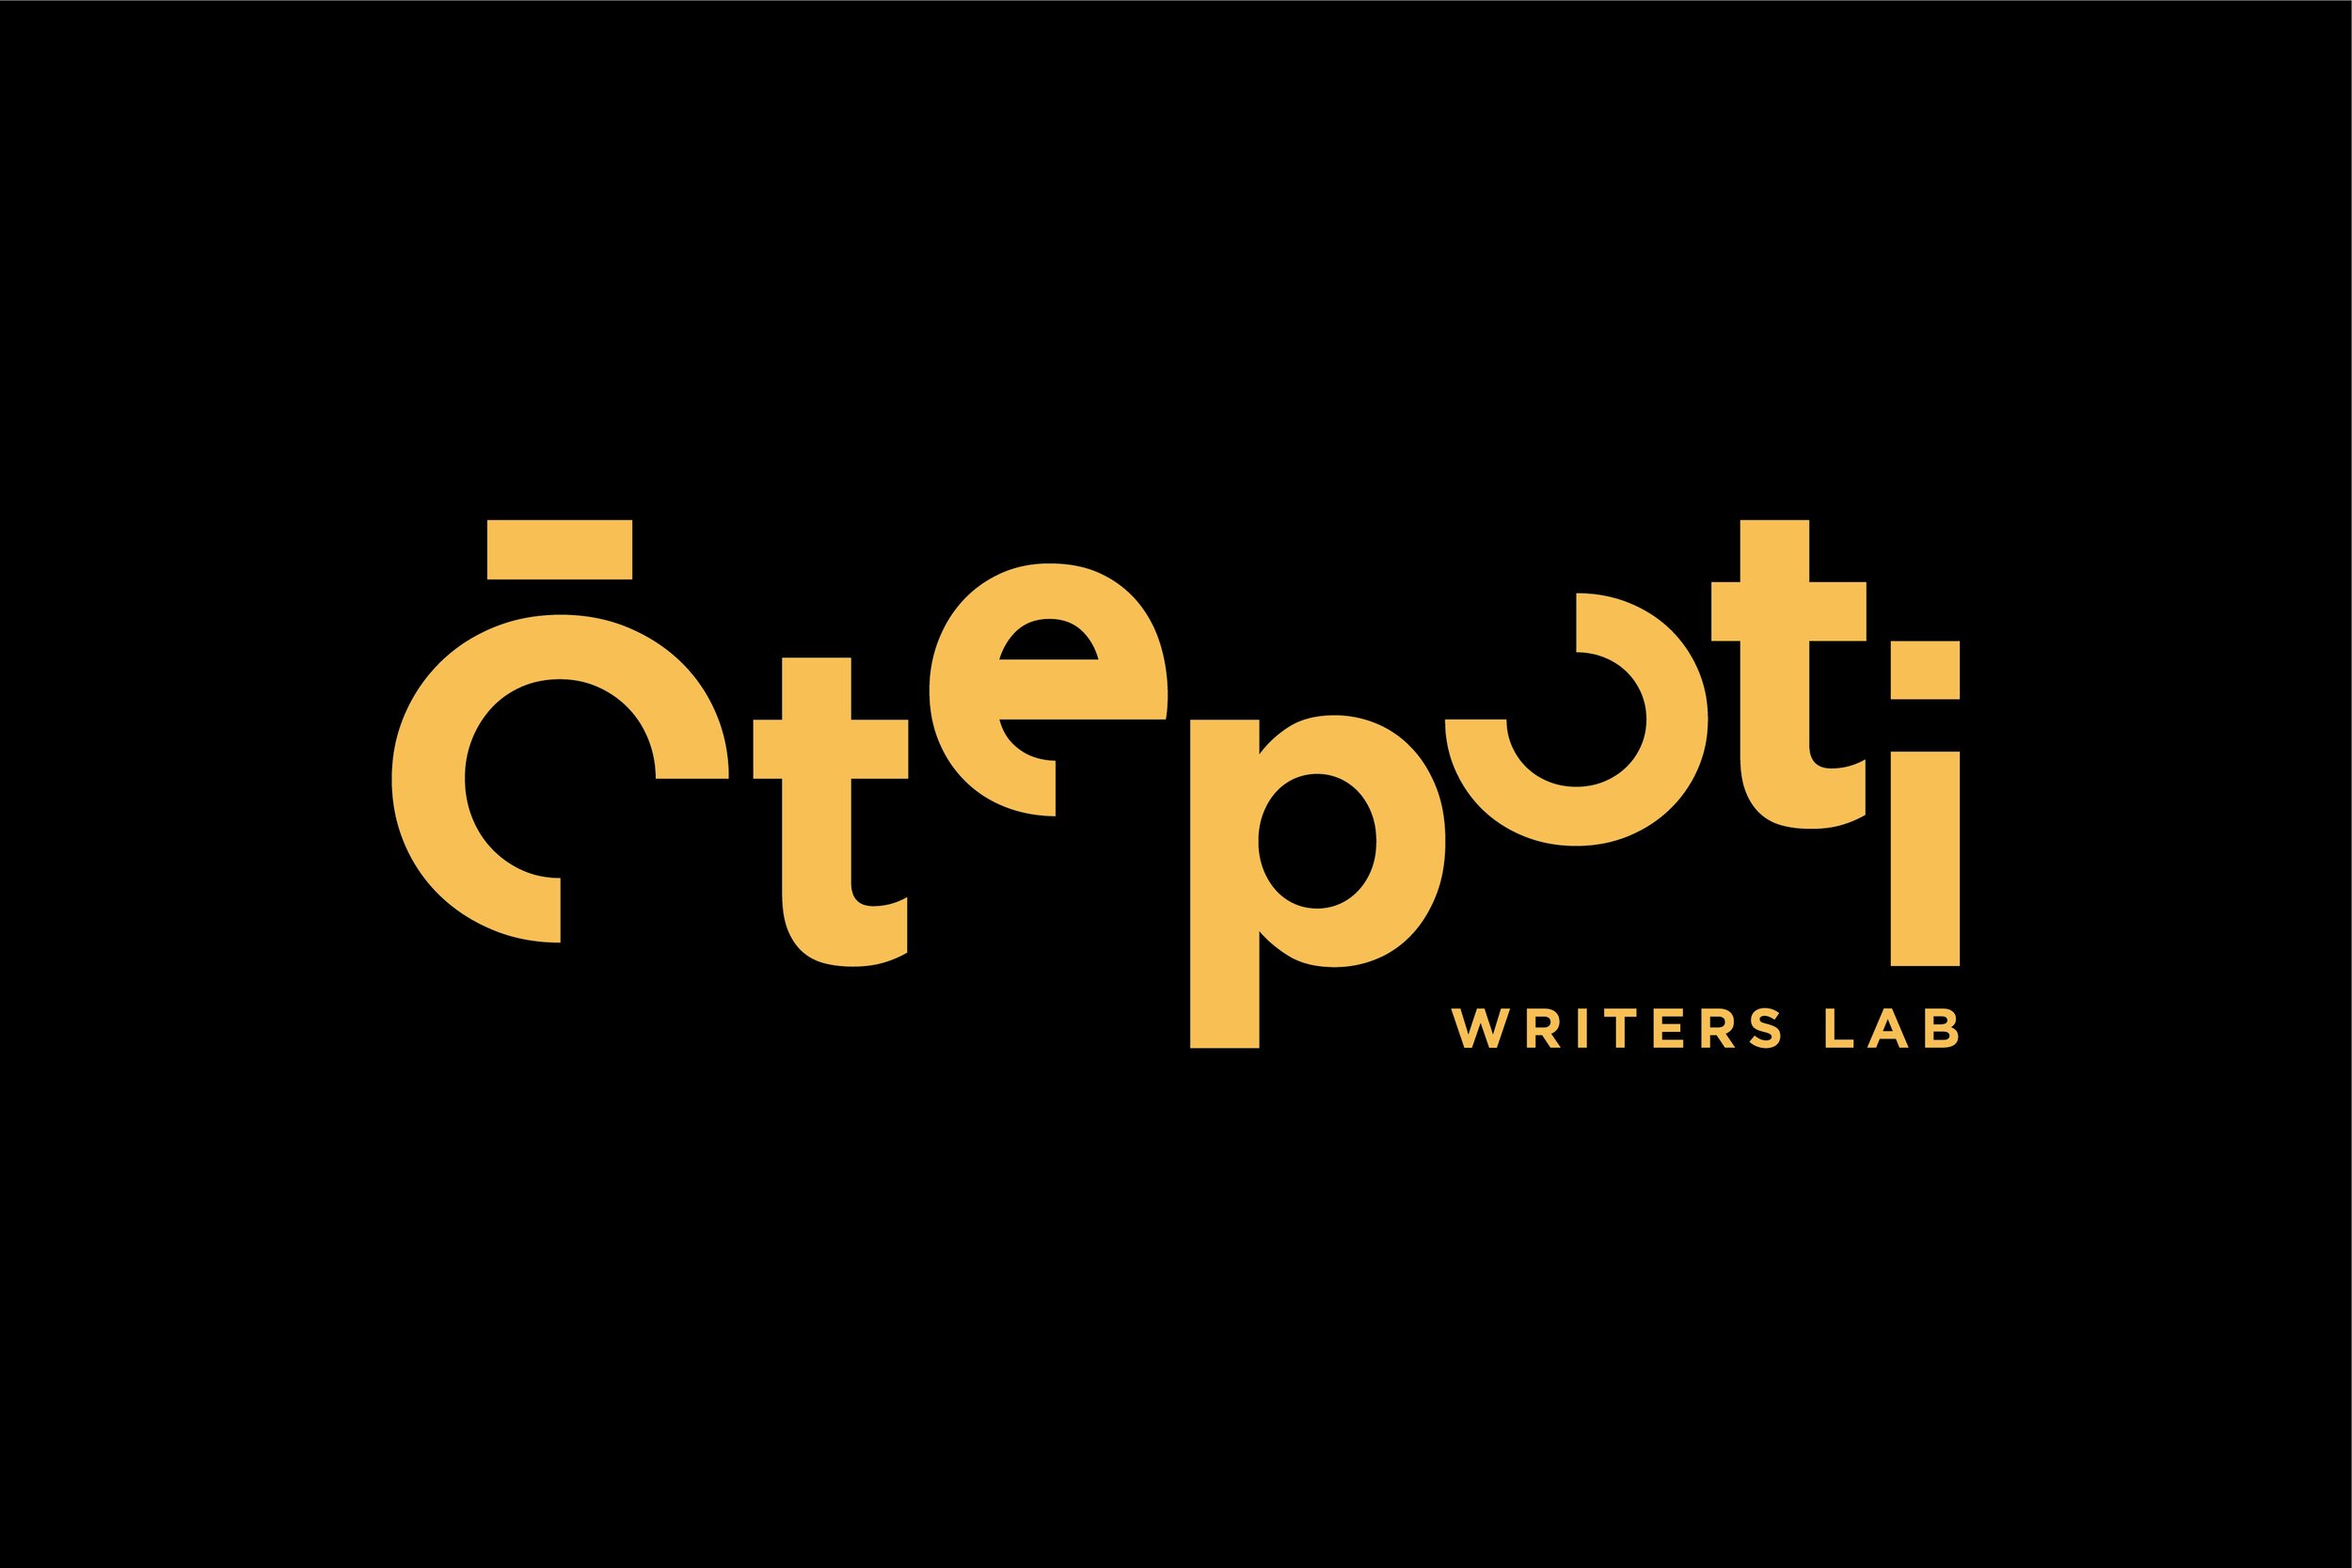 Ōtepoti Writers Lab